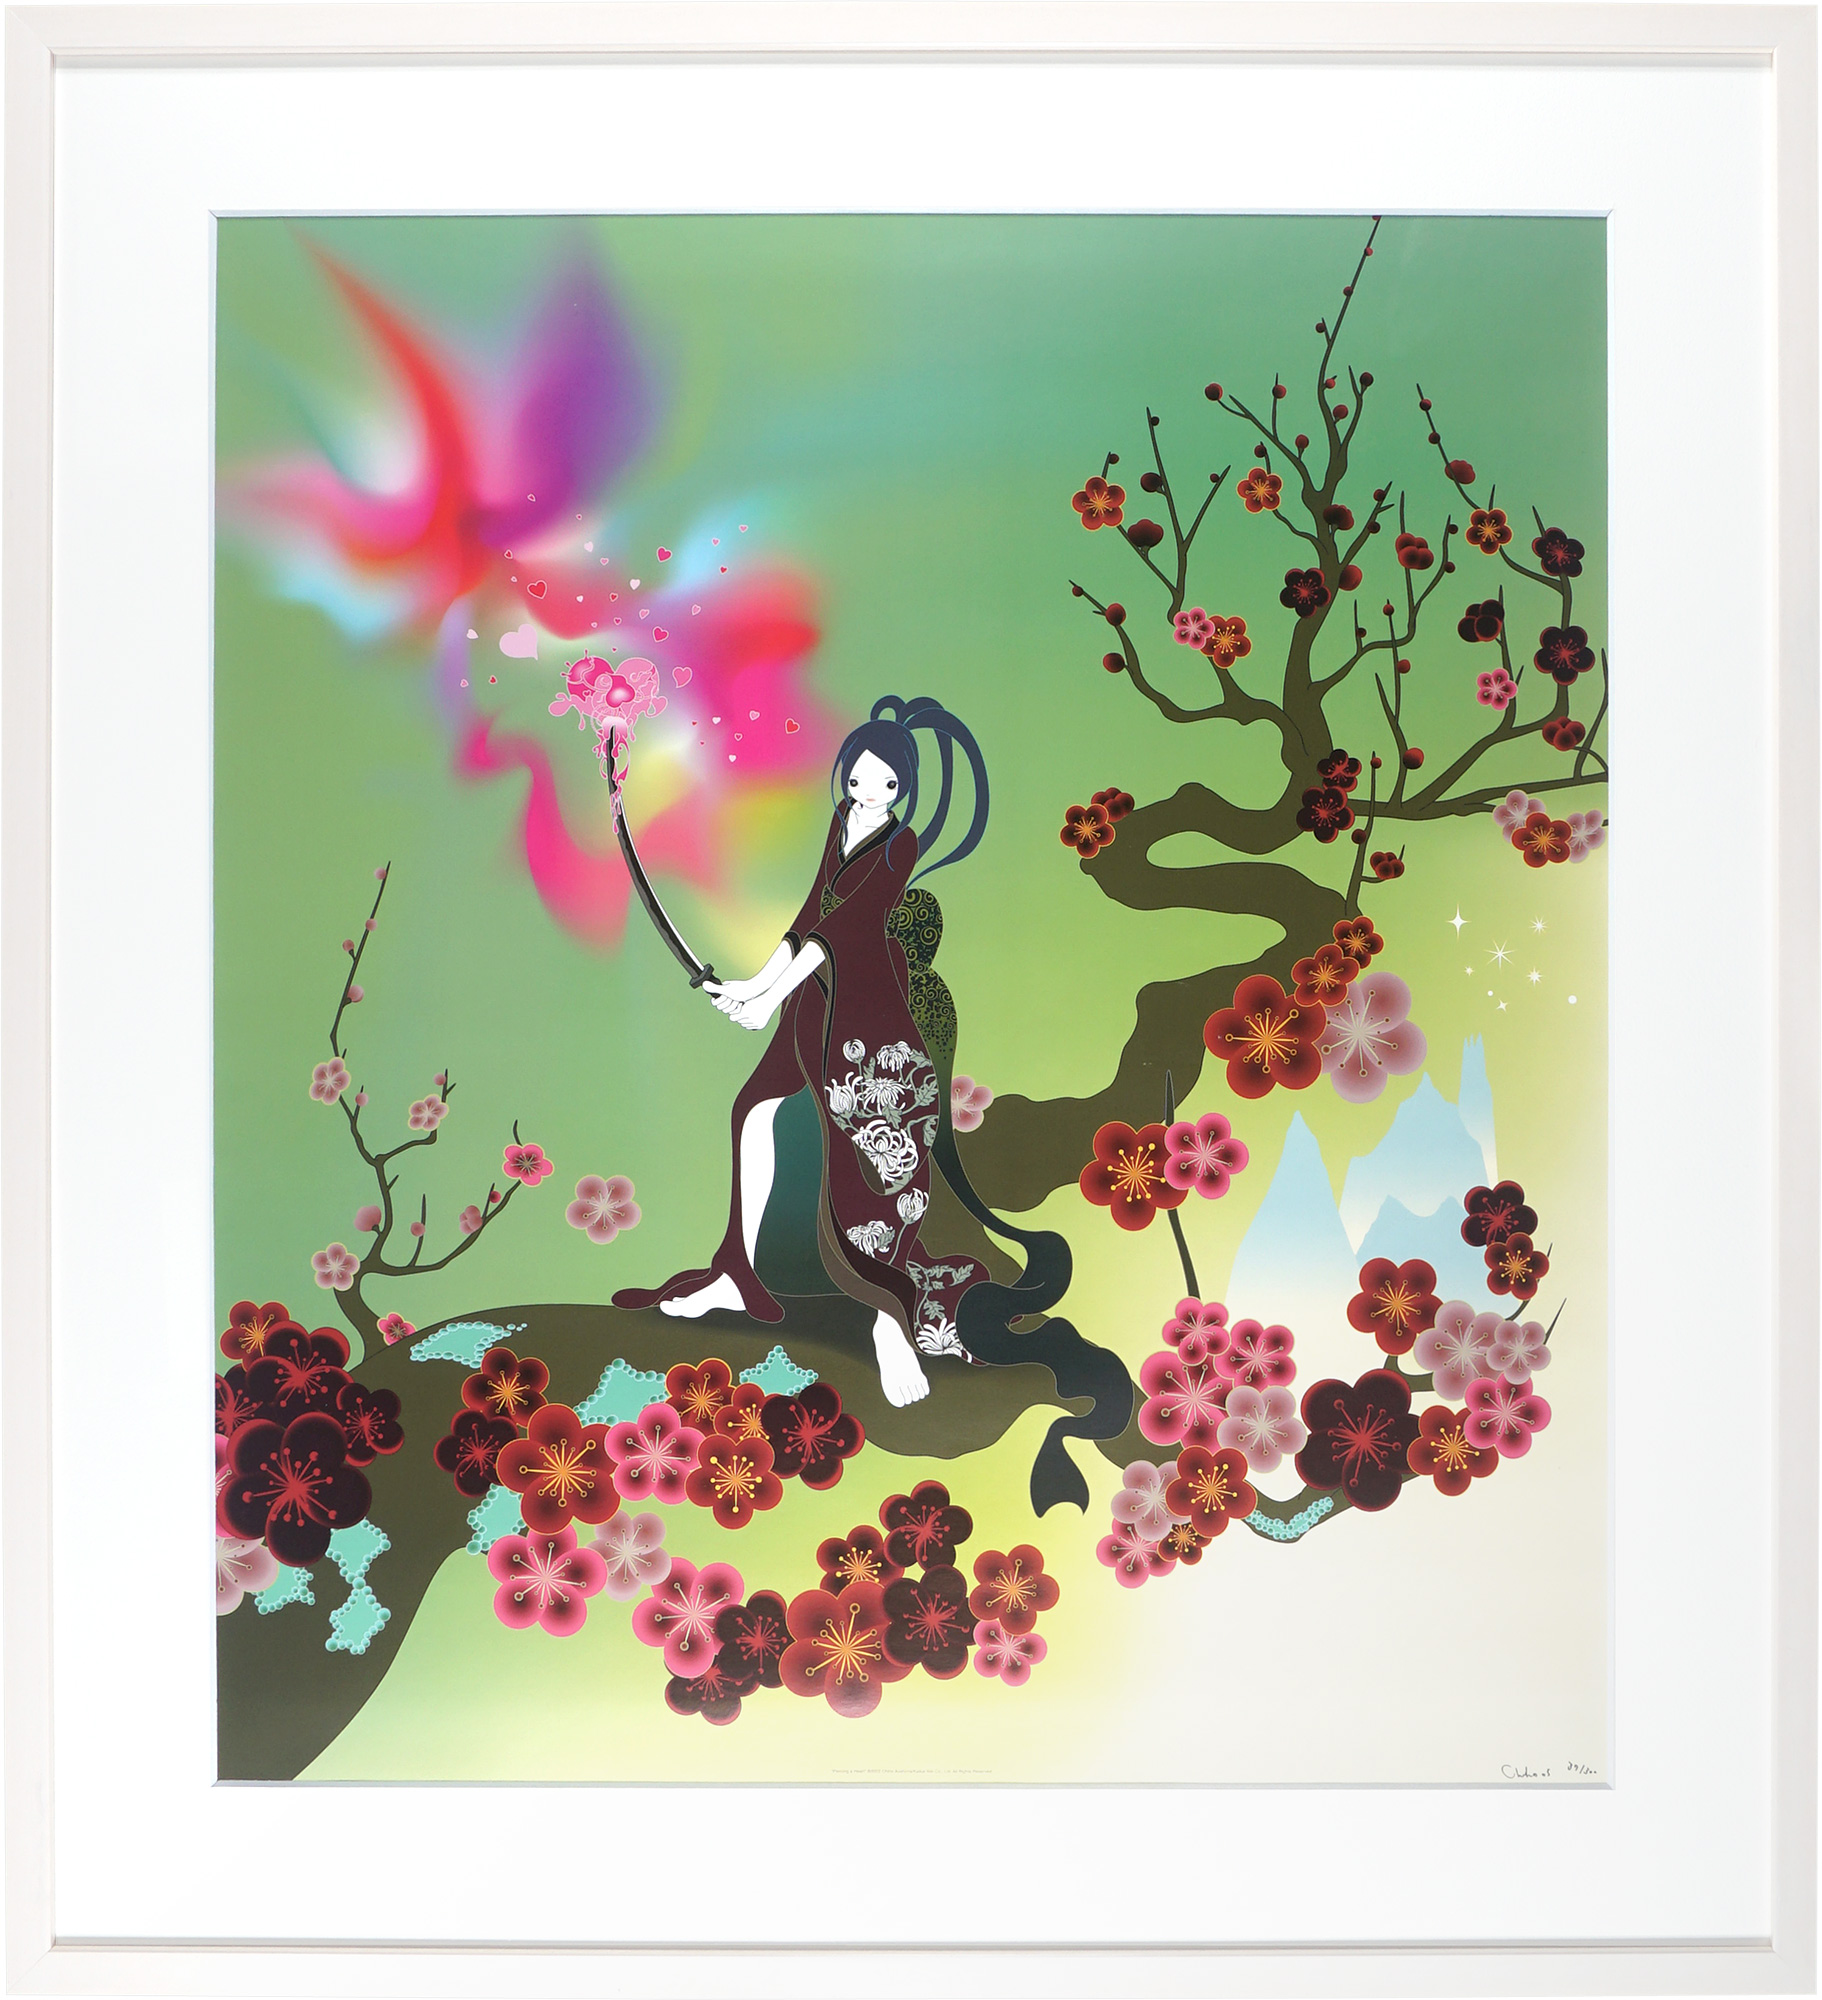 青島千穂エディションサイン入り版画「私の周りの魂と花」